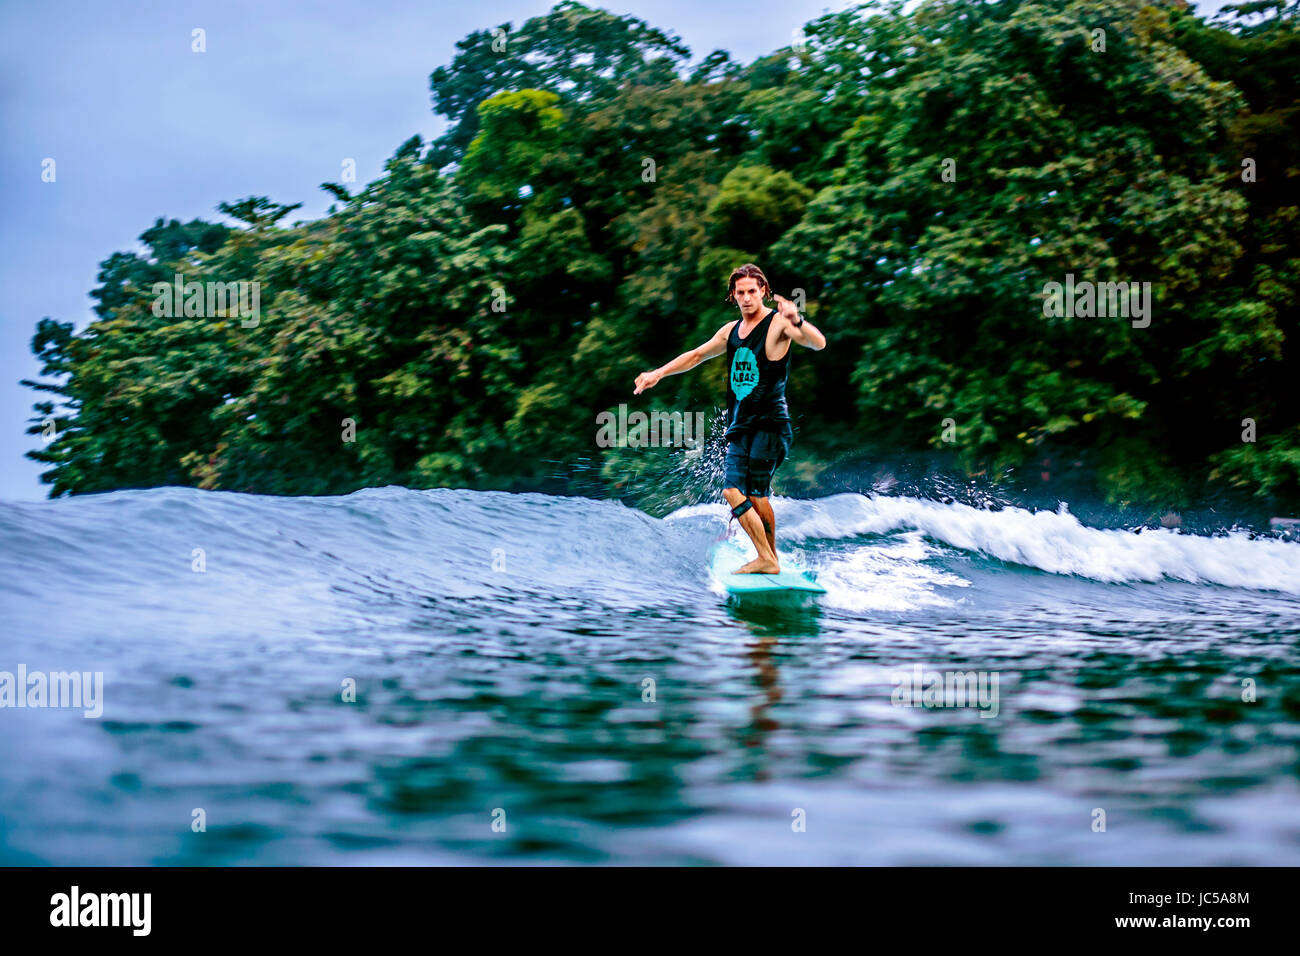 Homme surfeur sur vague contre arbres verts Banque D'Images